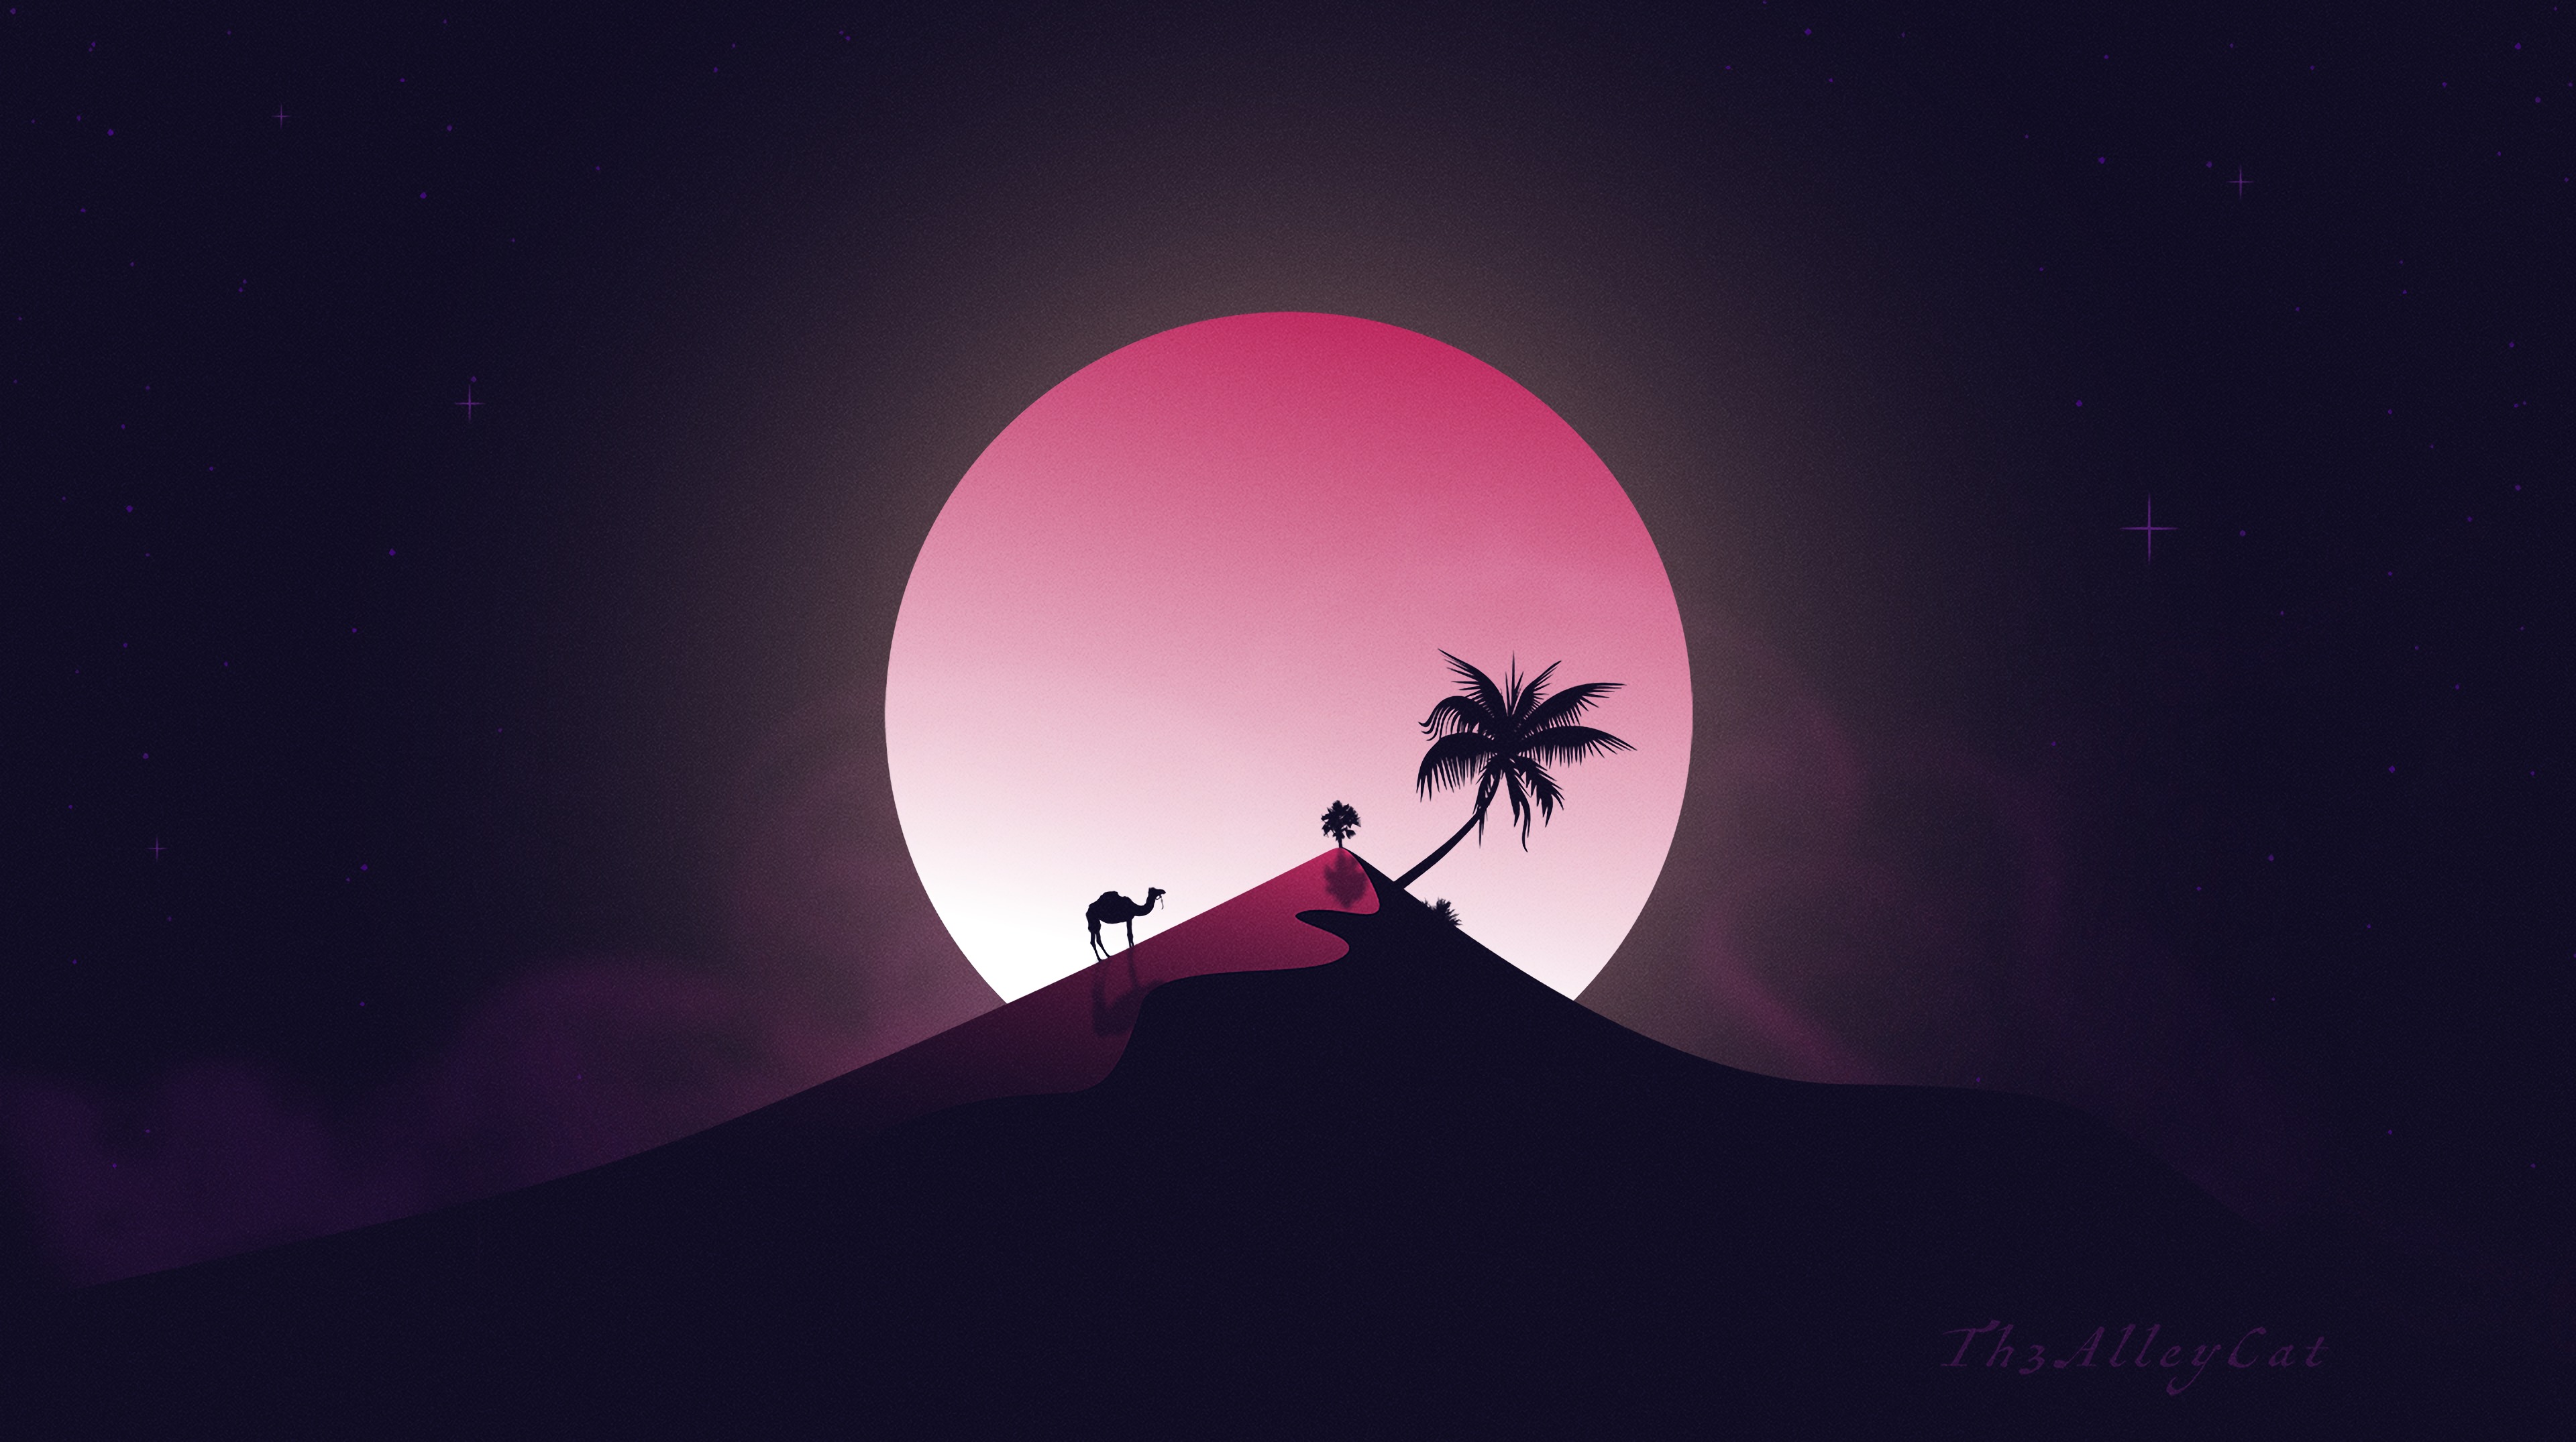 hill, palm, desert, art, moon, camel cellphone